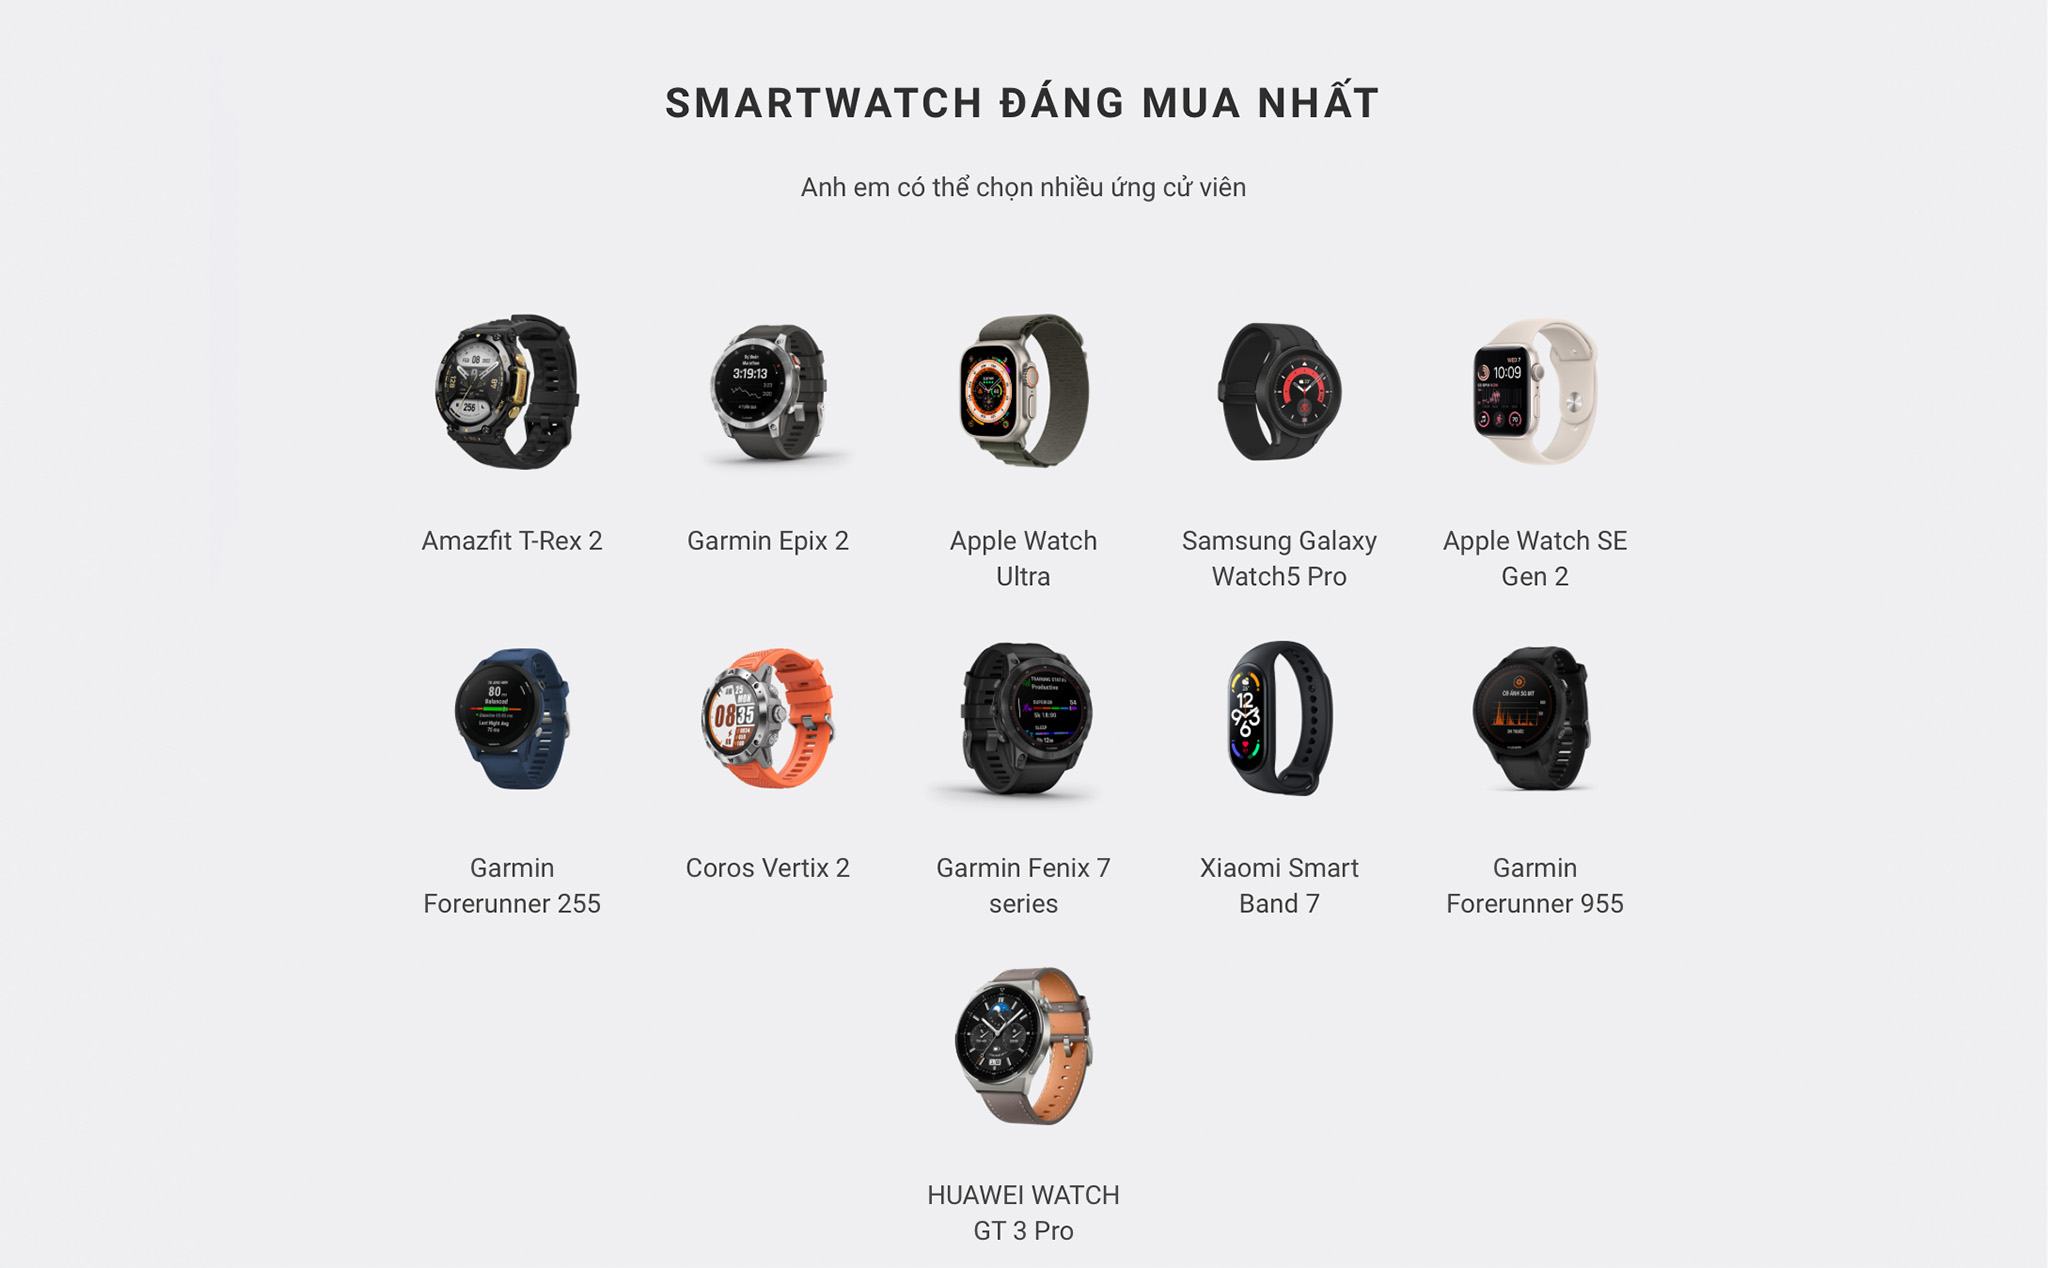 TTBC22: Mời anh em bình chọn hạng mục Smarwatch, cơ hội trúng Apple Watch Series 3